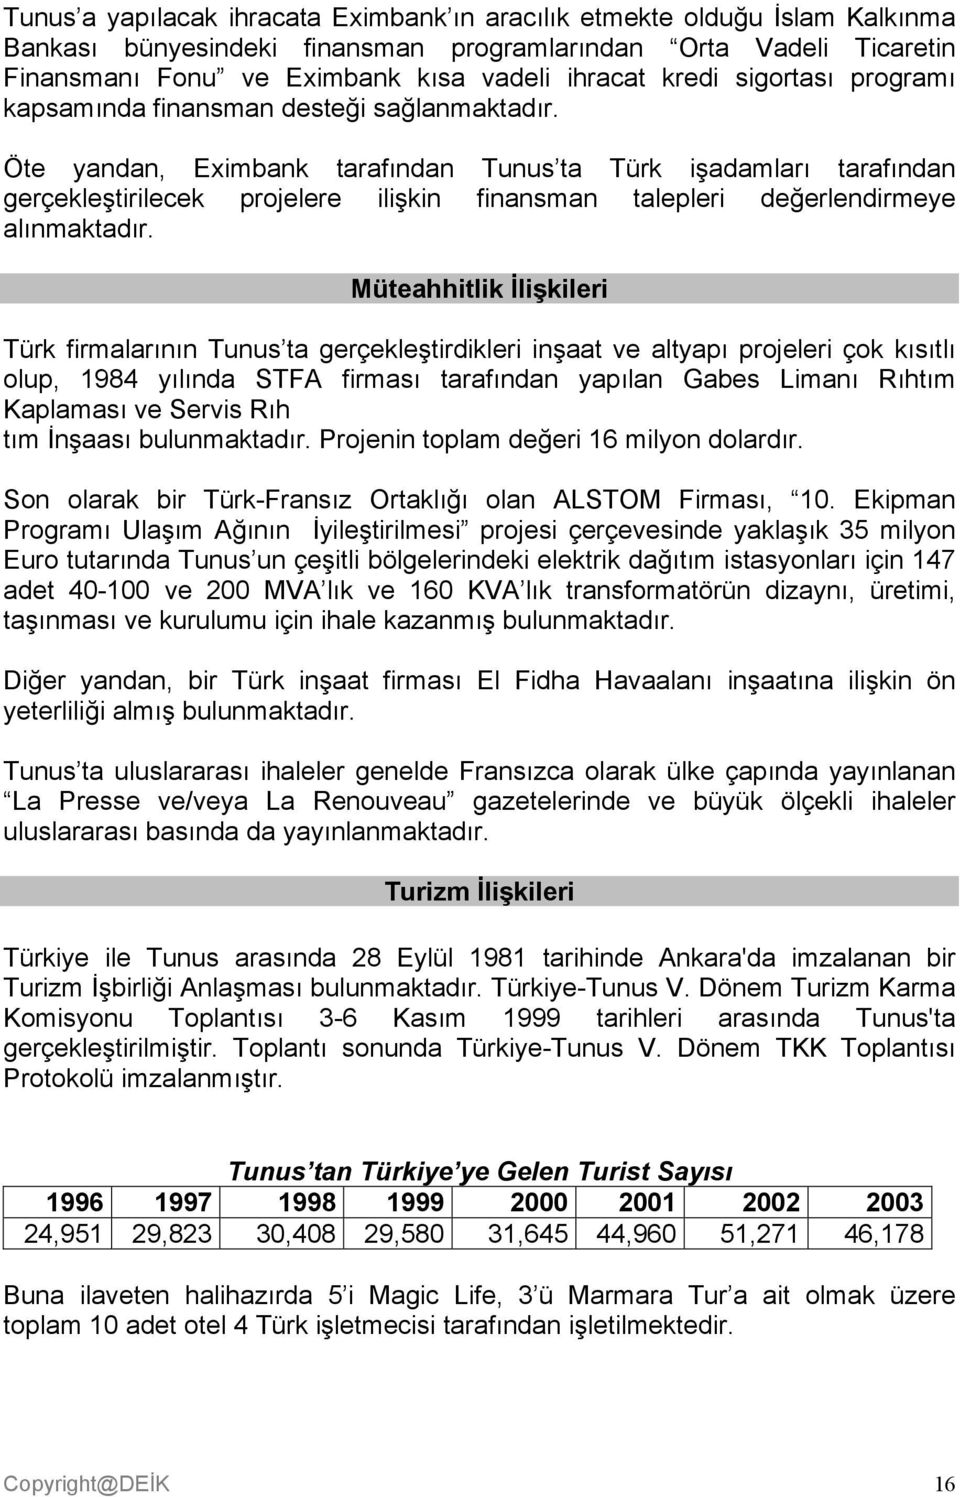 Öte yandan, Eximbank tarafından Tunus ta Türk işadamları tarafından gerçekleştirilecek projelere ilişkin finansman talepleri değerlendirmeye alınmaktadır.